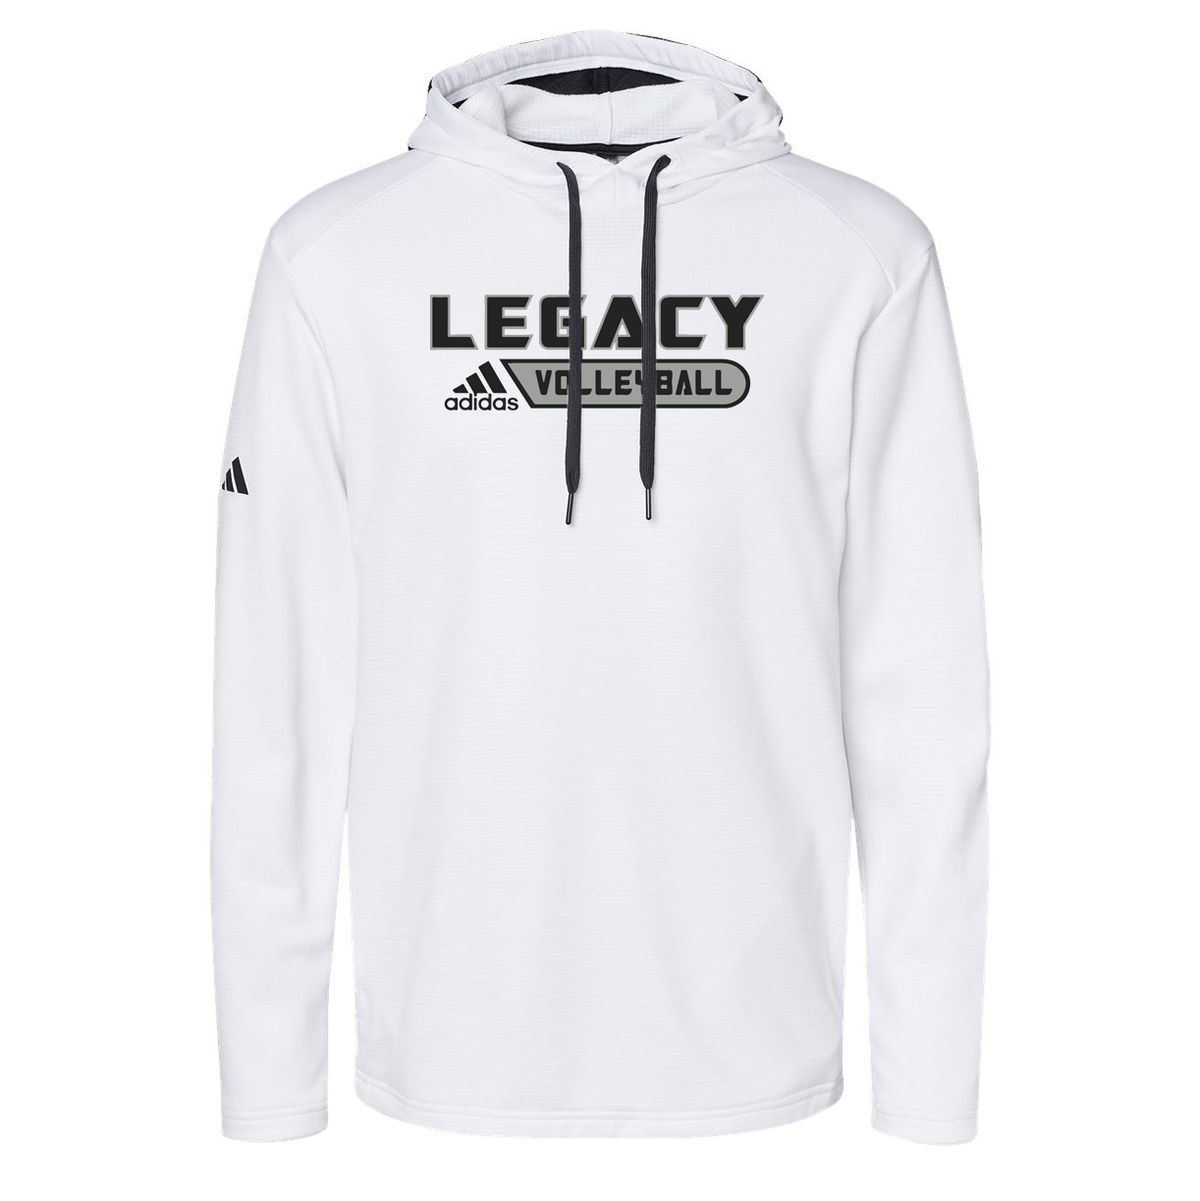 Legacy Volleyball Club Adidas Textured Hooded Sweatshirt